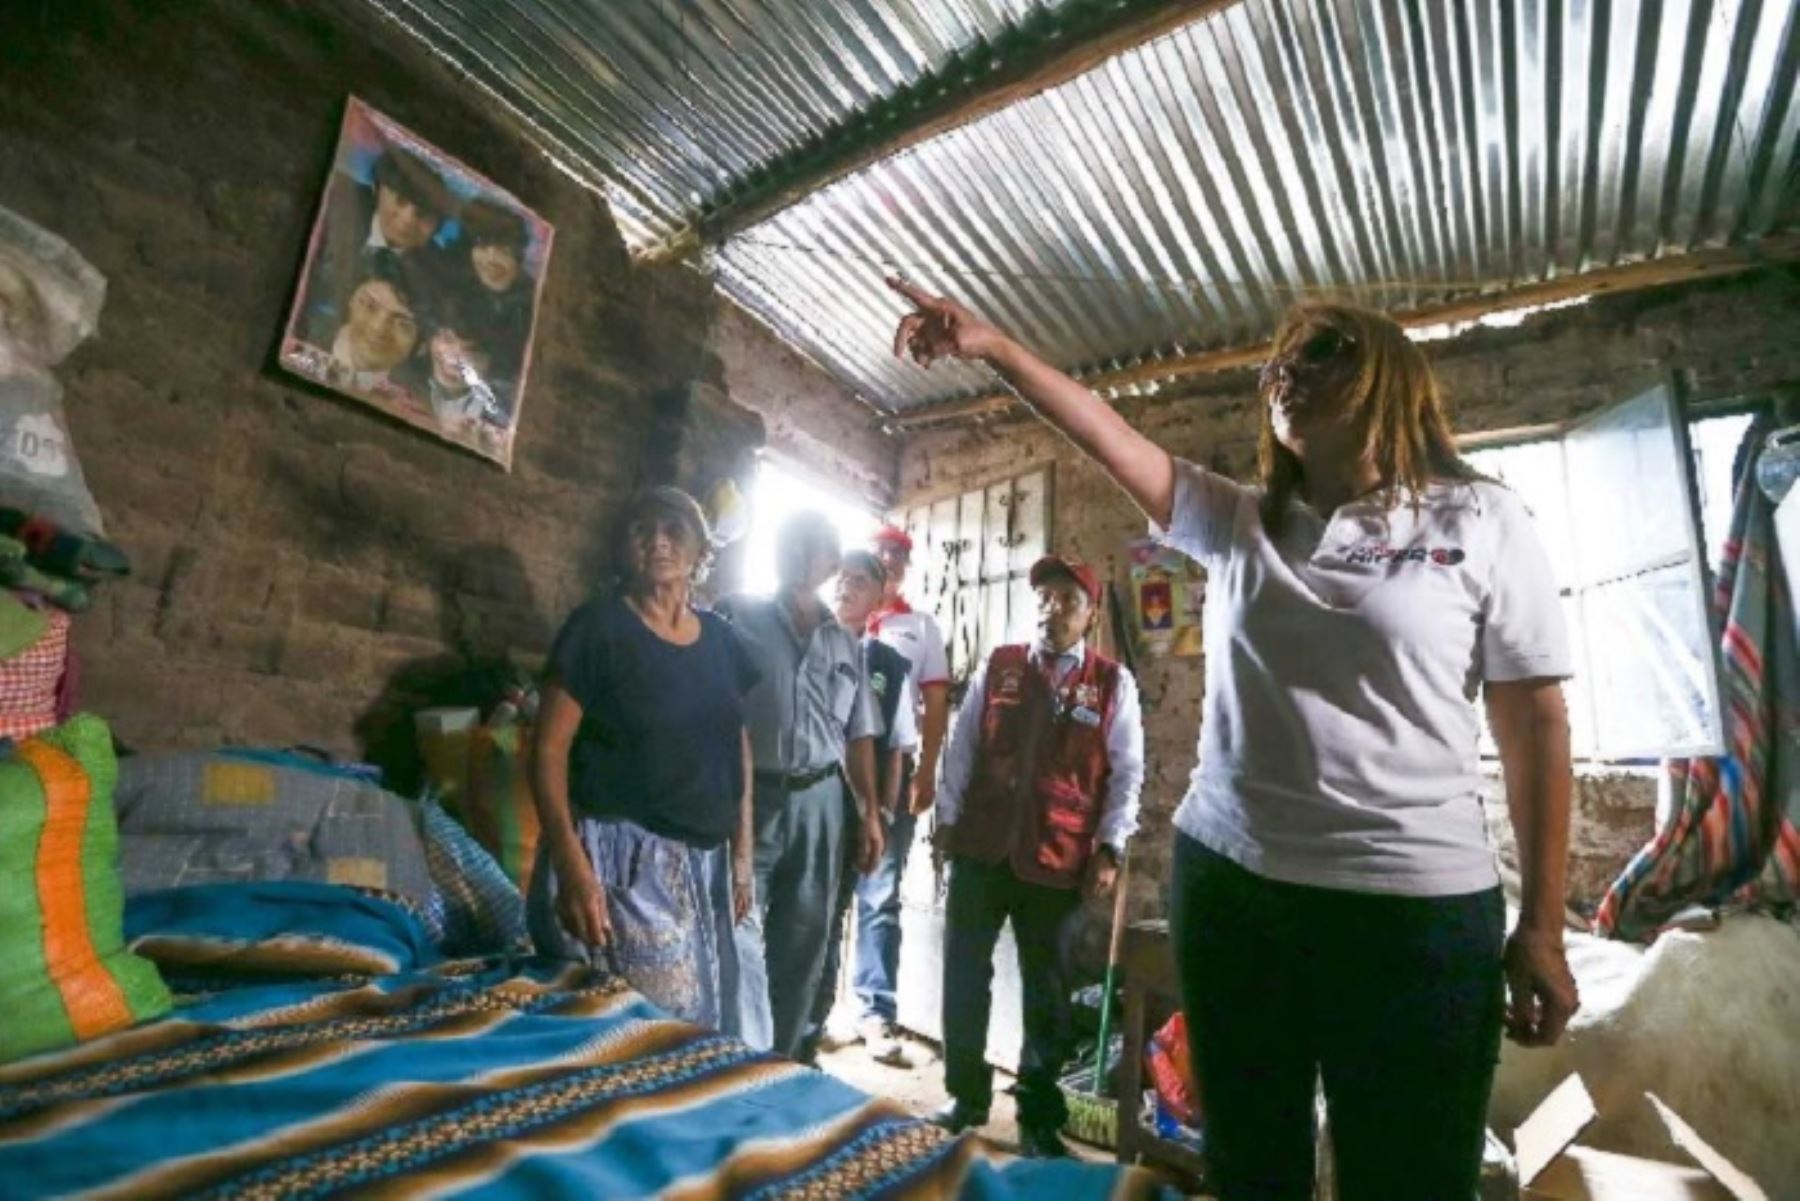 La oportuna articulación del Ministerio de Desarrollo e Inclusión Social (Midis) y los gobiernos locales de Huarochirí, en la región Lima, permitió la inmediata atención de familias afectadas por el período de huaicos y lluvias, sostuvo la ministra del sector, Liliana La Rosa.